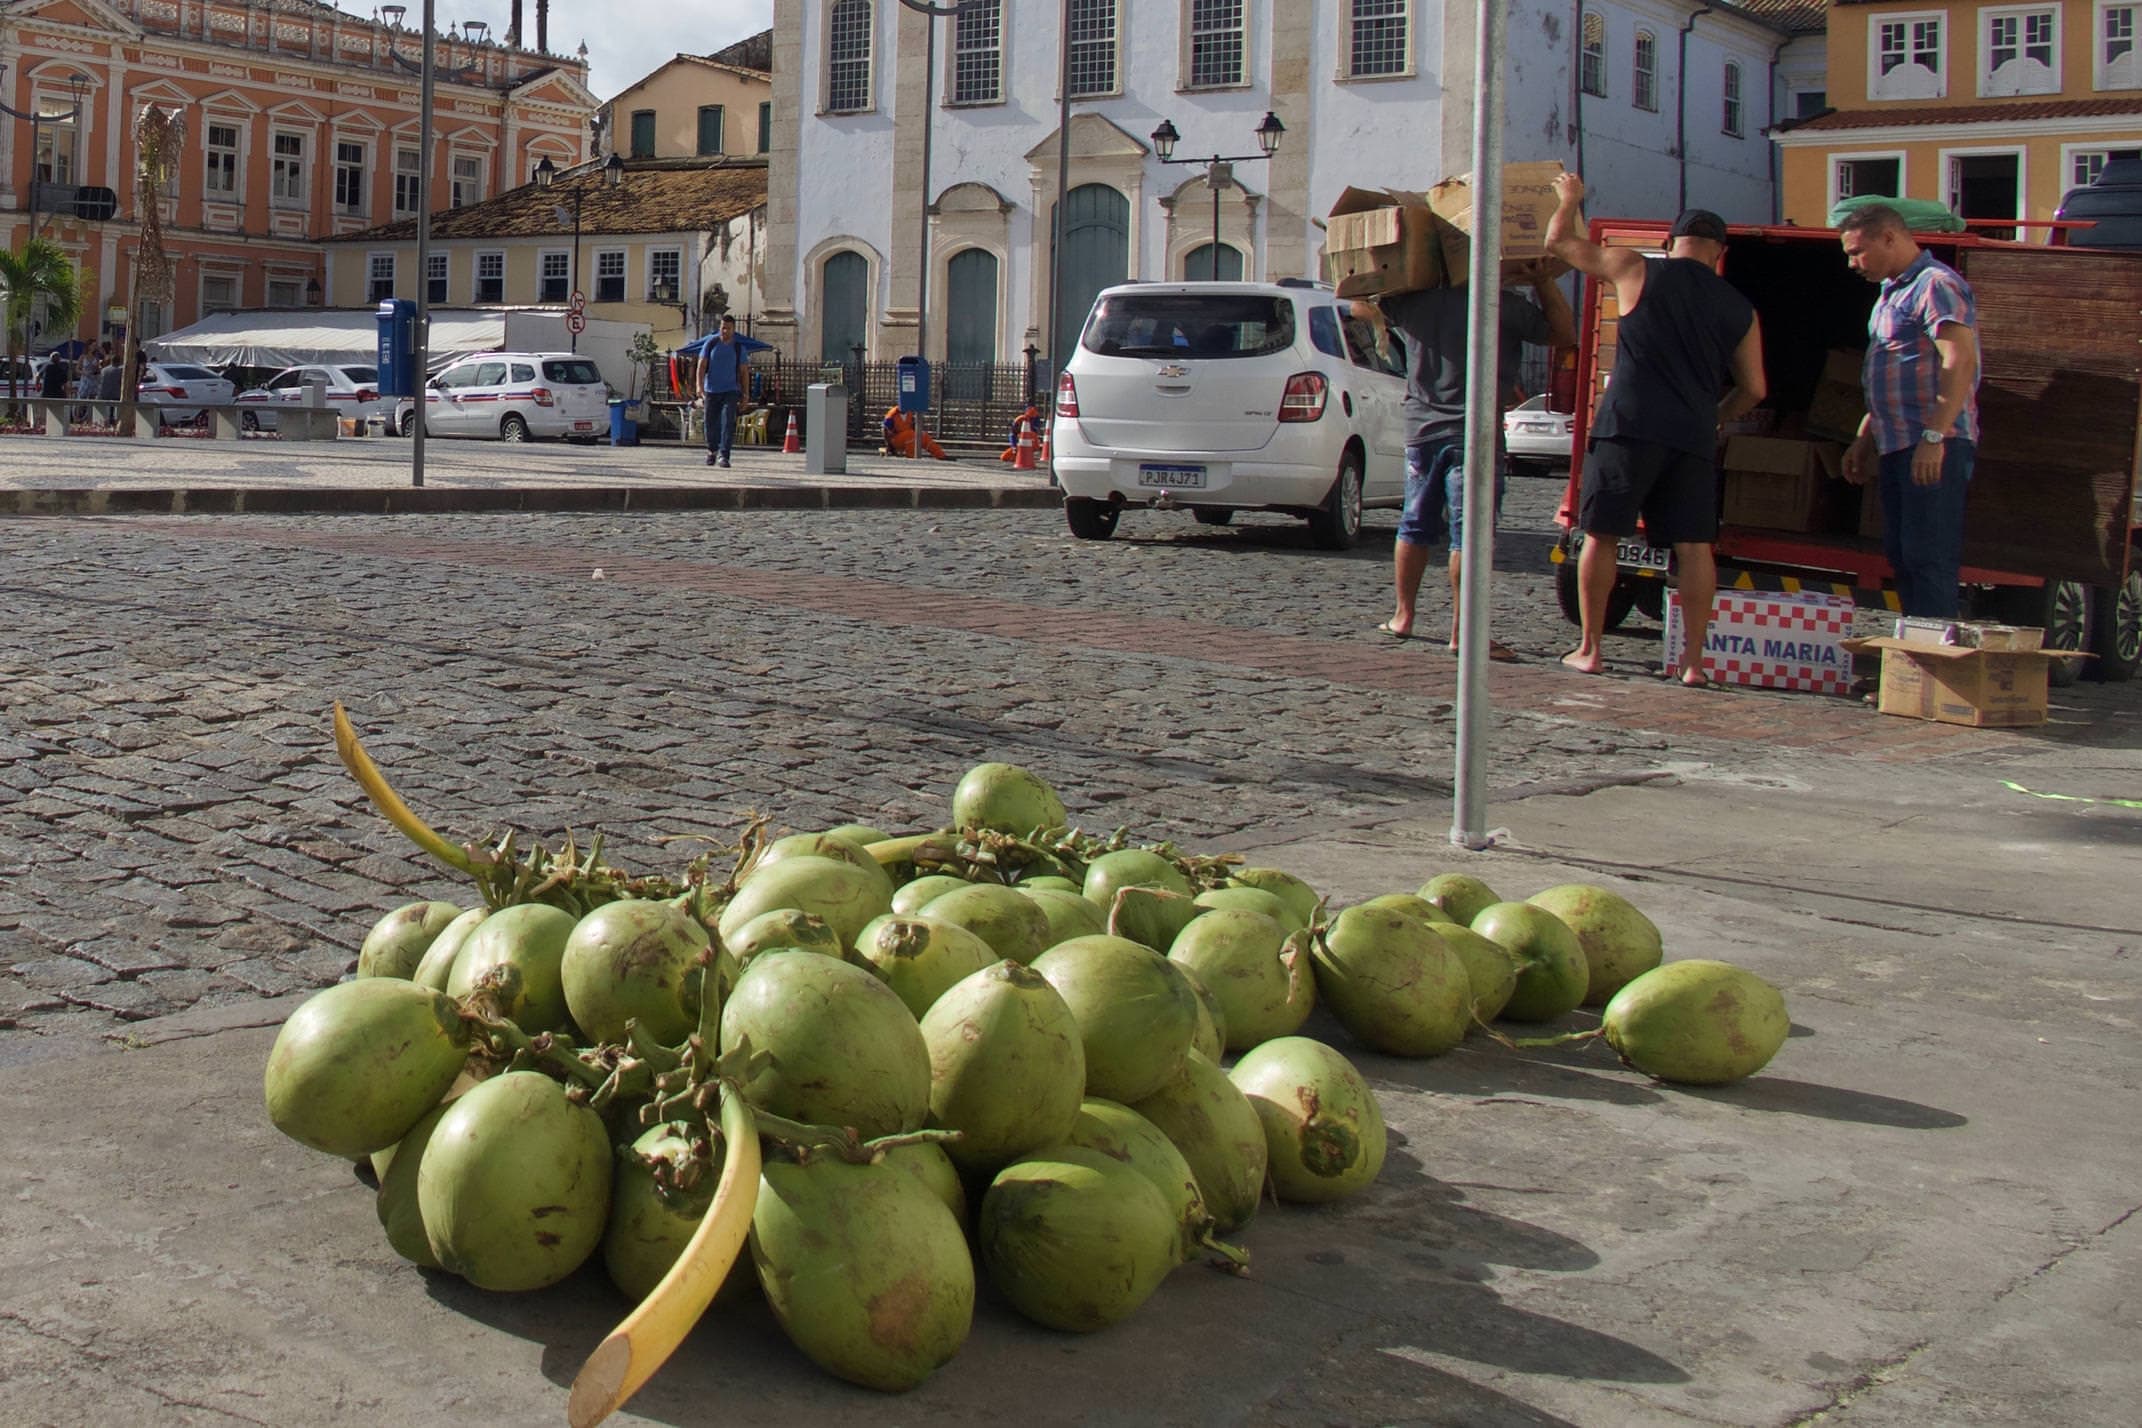 Brazil Salvador Pelourinho Coconuts on the street